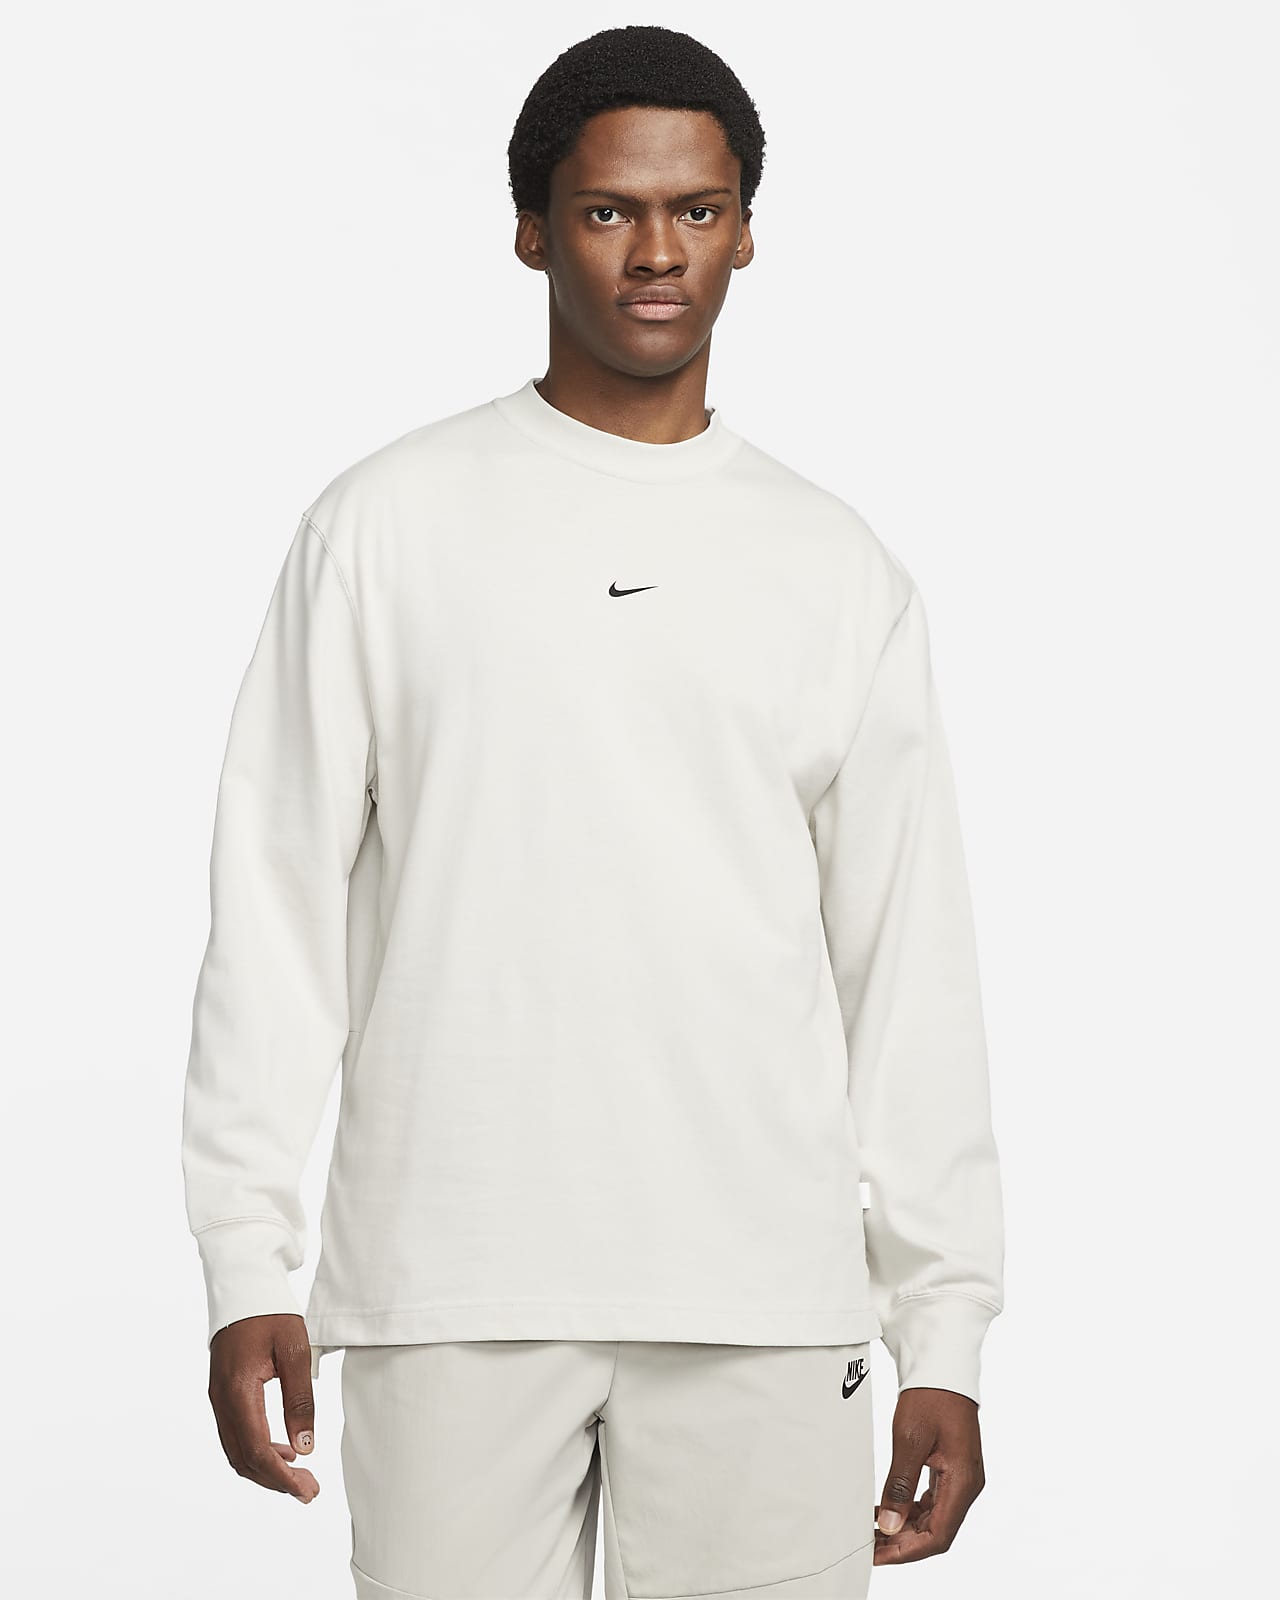 Nike Sportswear Style Essentials Men's Long-Sleeve Mock Neck Top